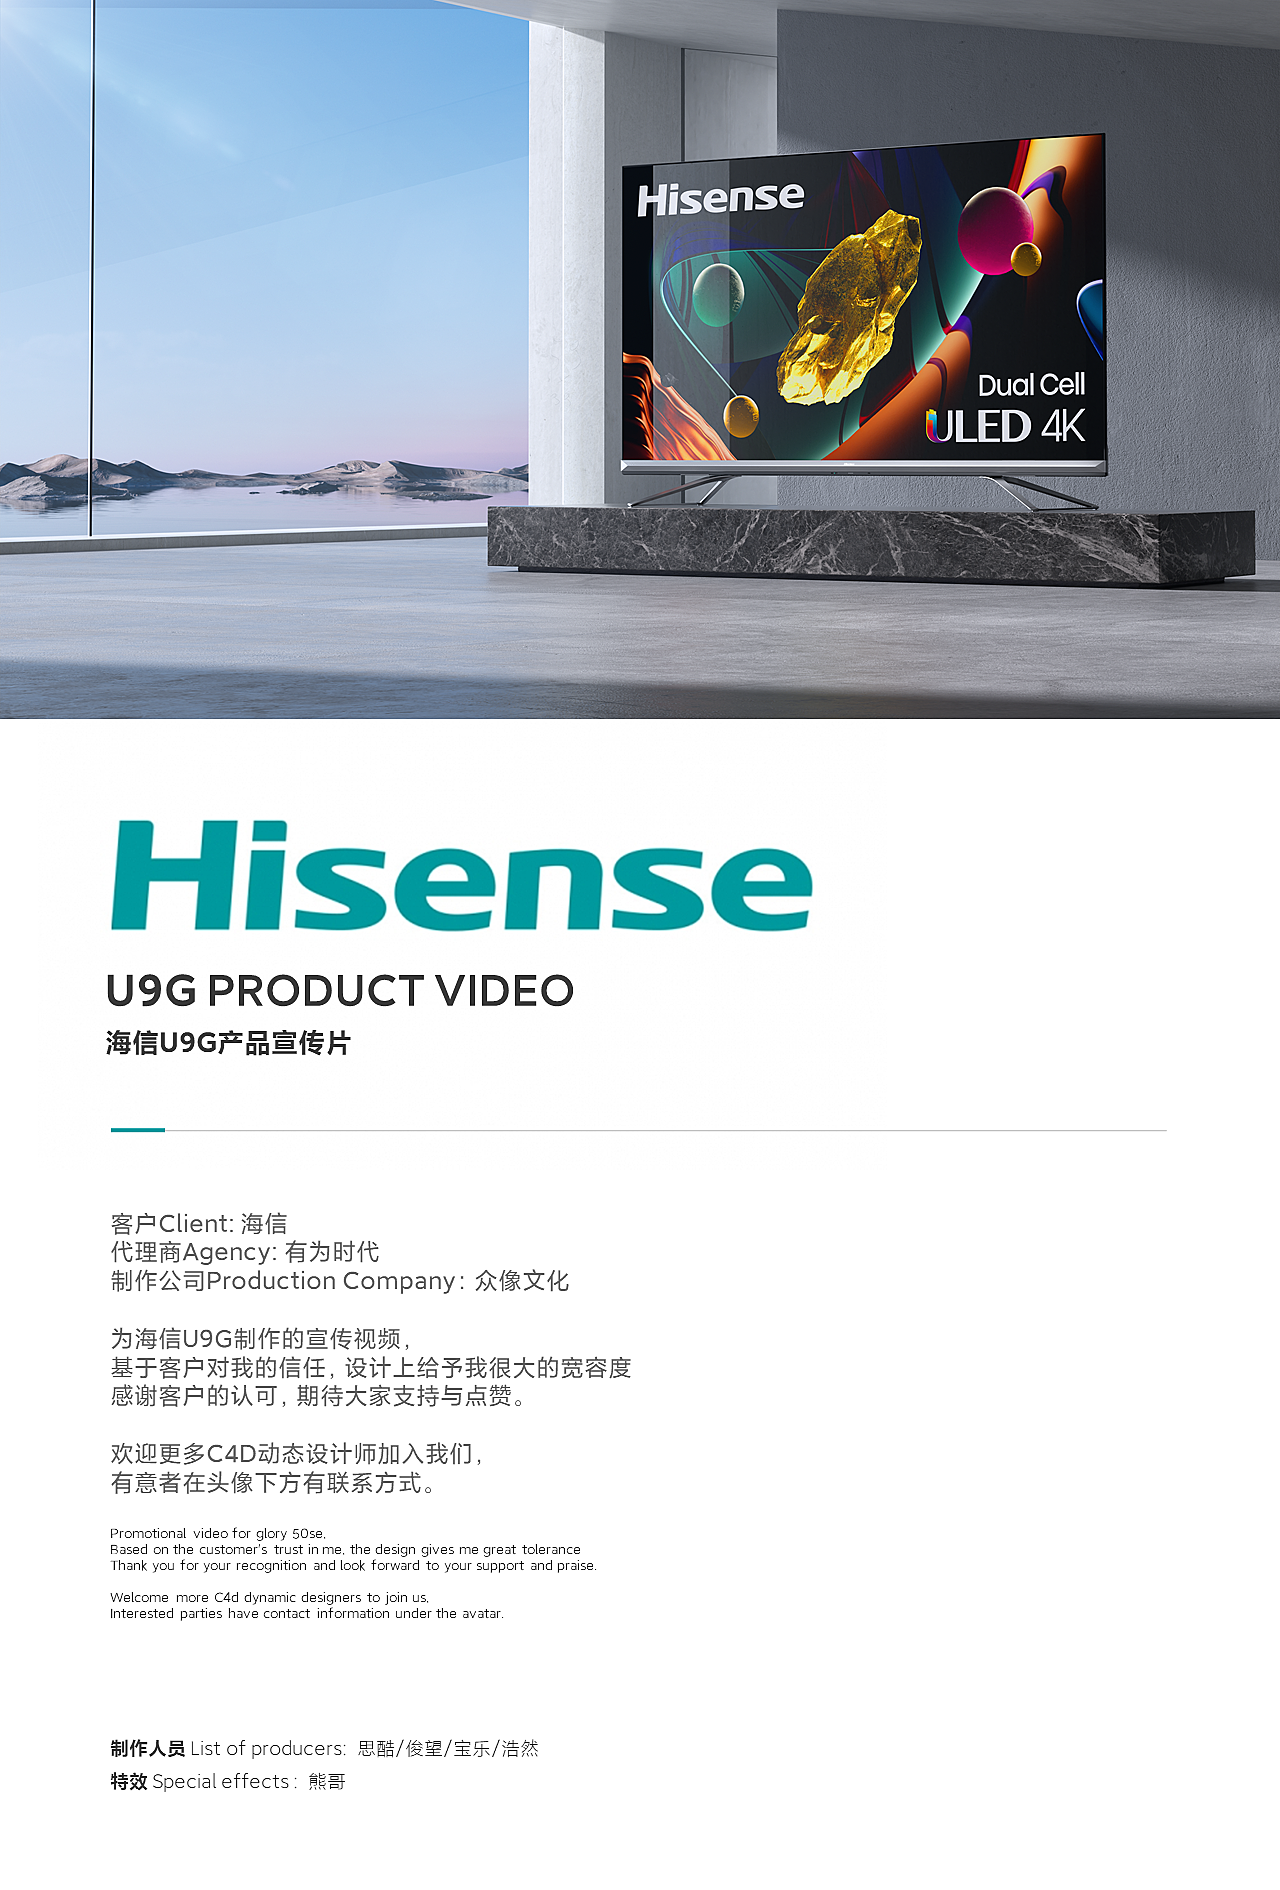 海信_海信 商标 logo hisense_图片素材_照片 - 知鱼素材